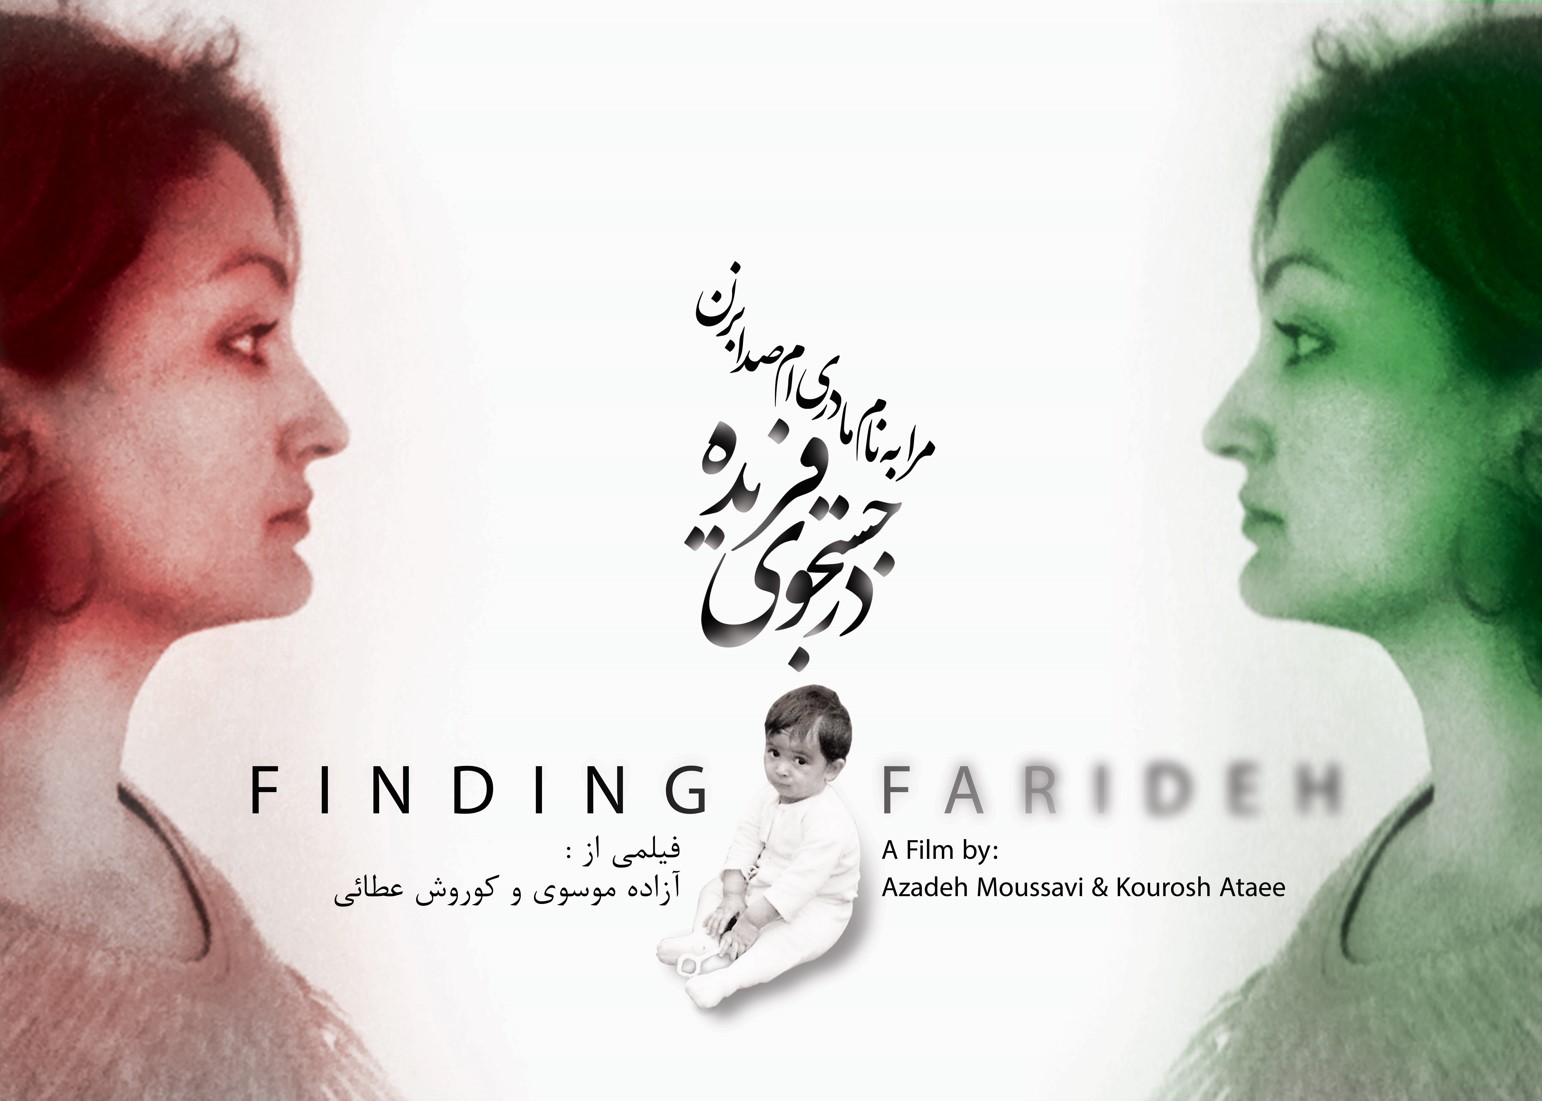  فیلم مستند در جستجوی فریده به کارگردانی آزاده موسوی و کوروش عطائی